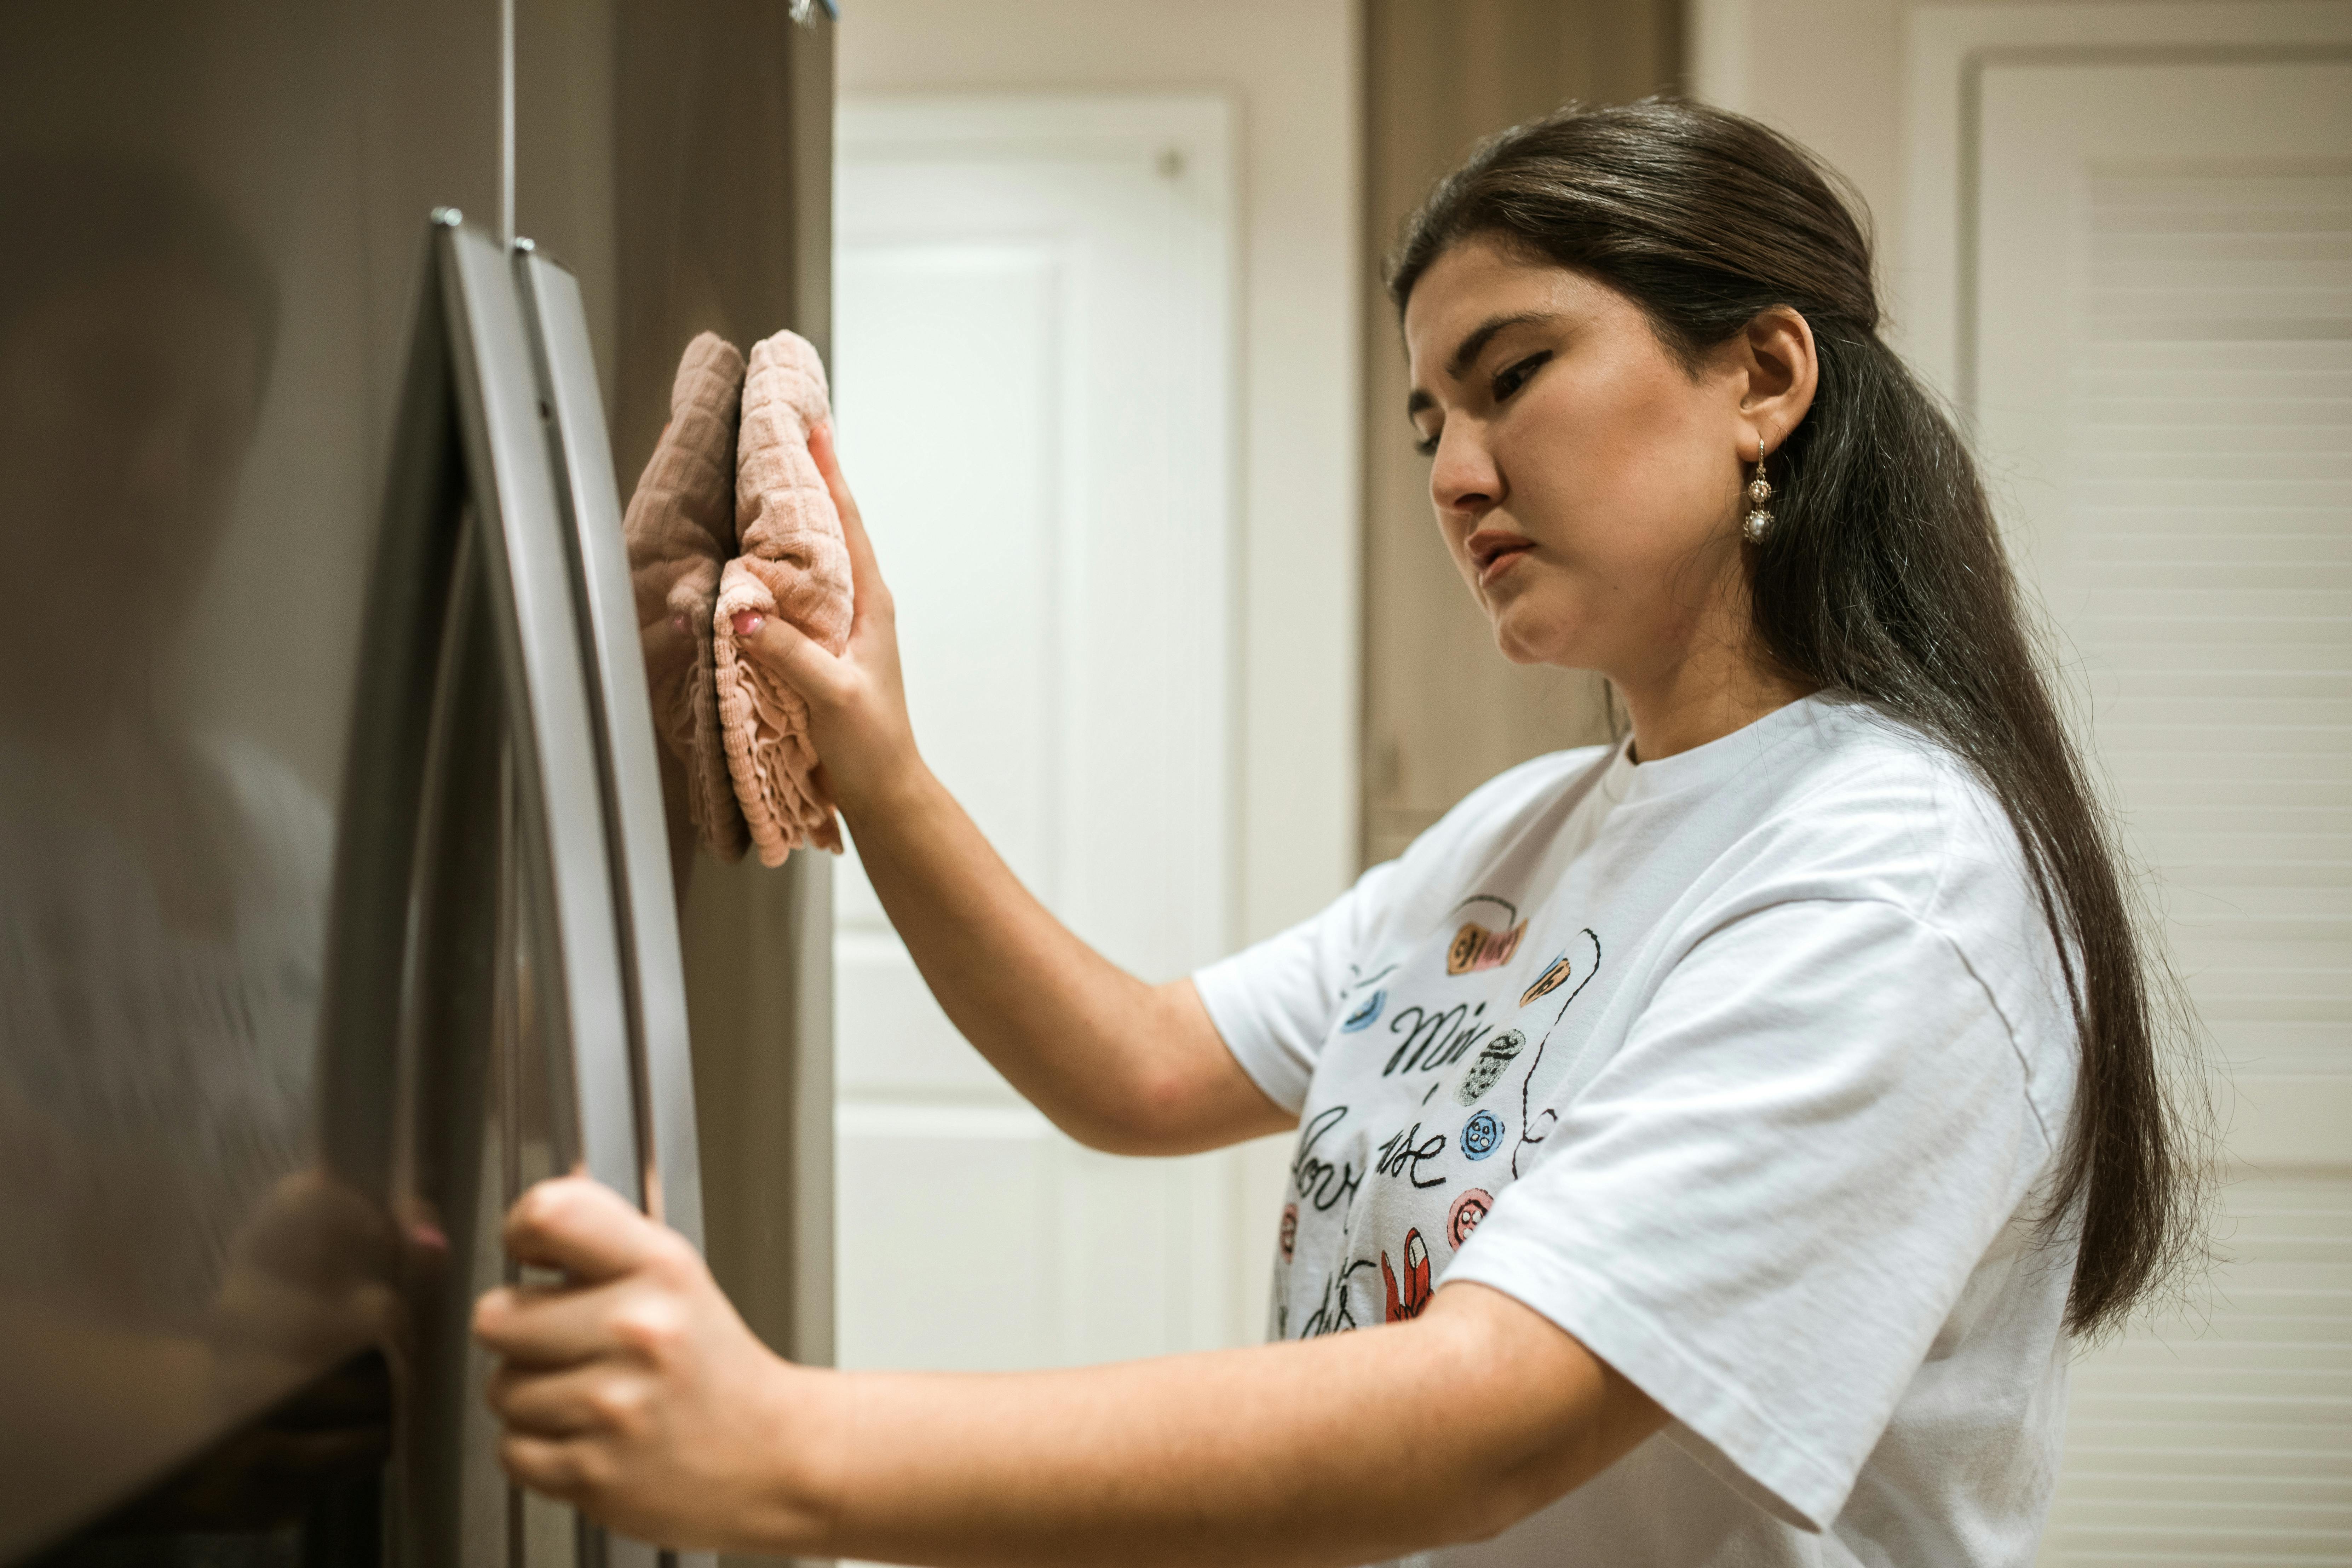 Eine Frau reinigt einen Kühlschrank. | Quelle: Pexels